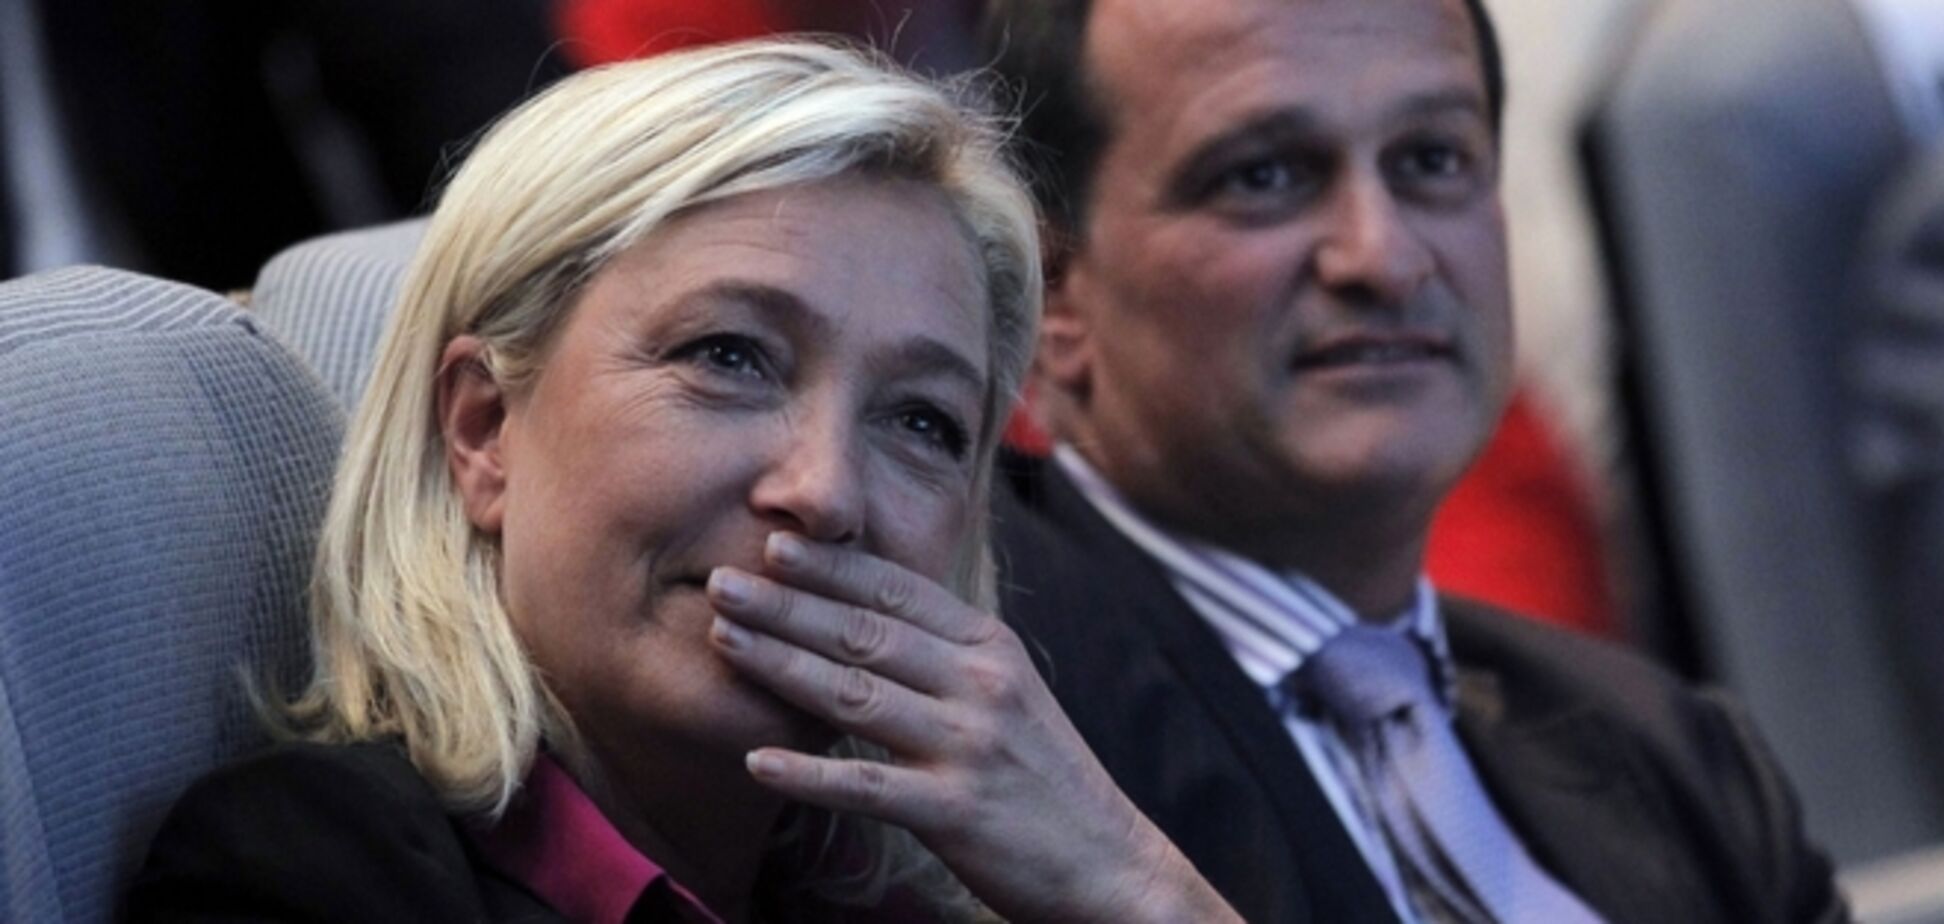 Спутнику лидера французских ультпраправых подсыпали слабительного в вино перед пресс-конференцией